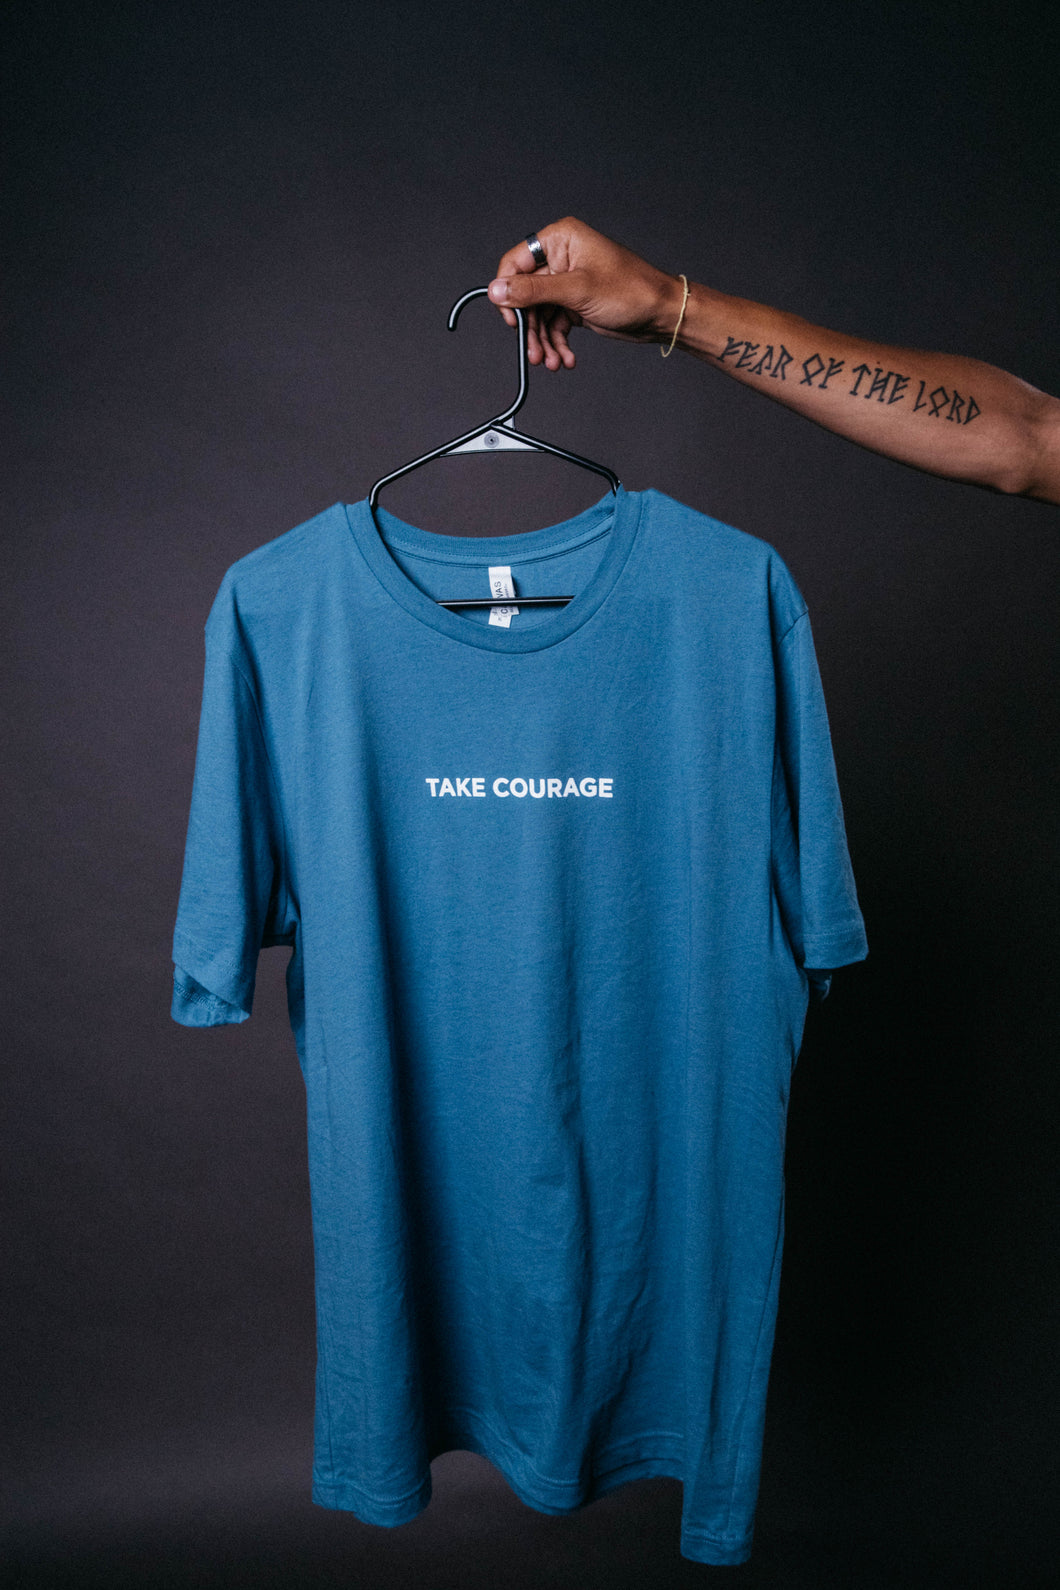 Take Courage T shirt